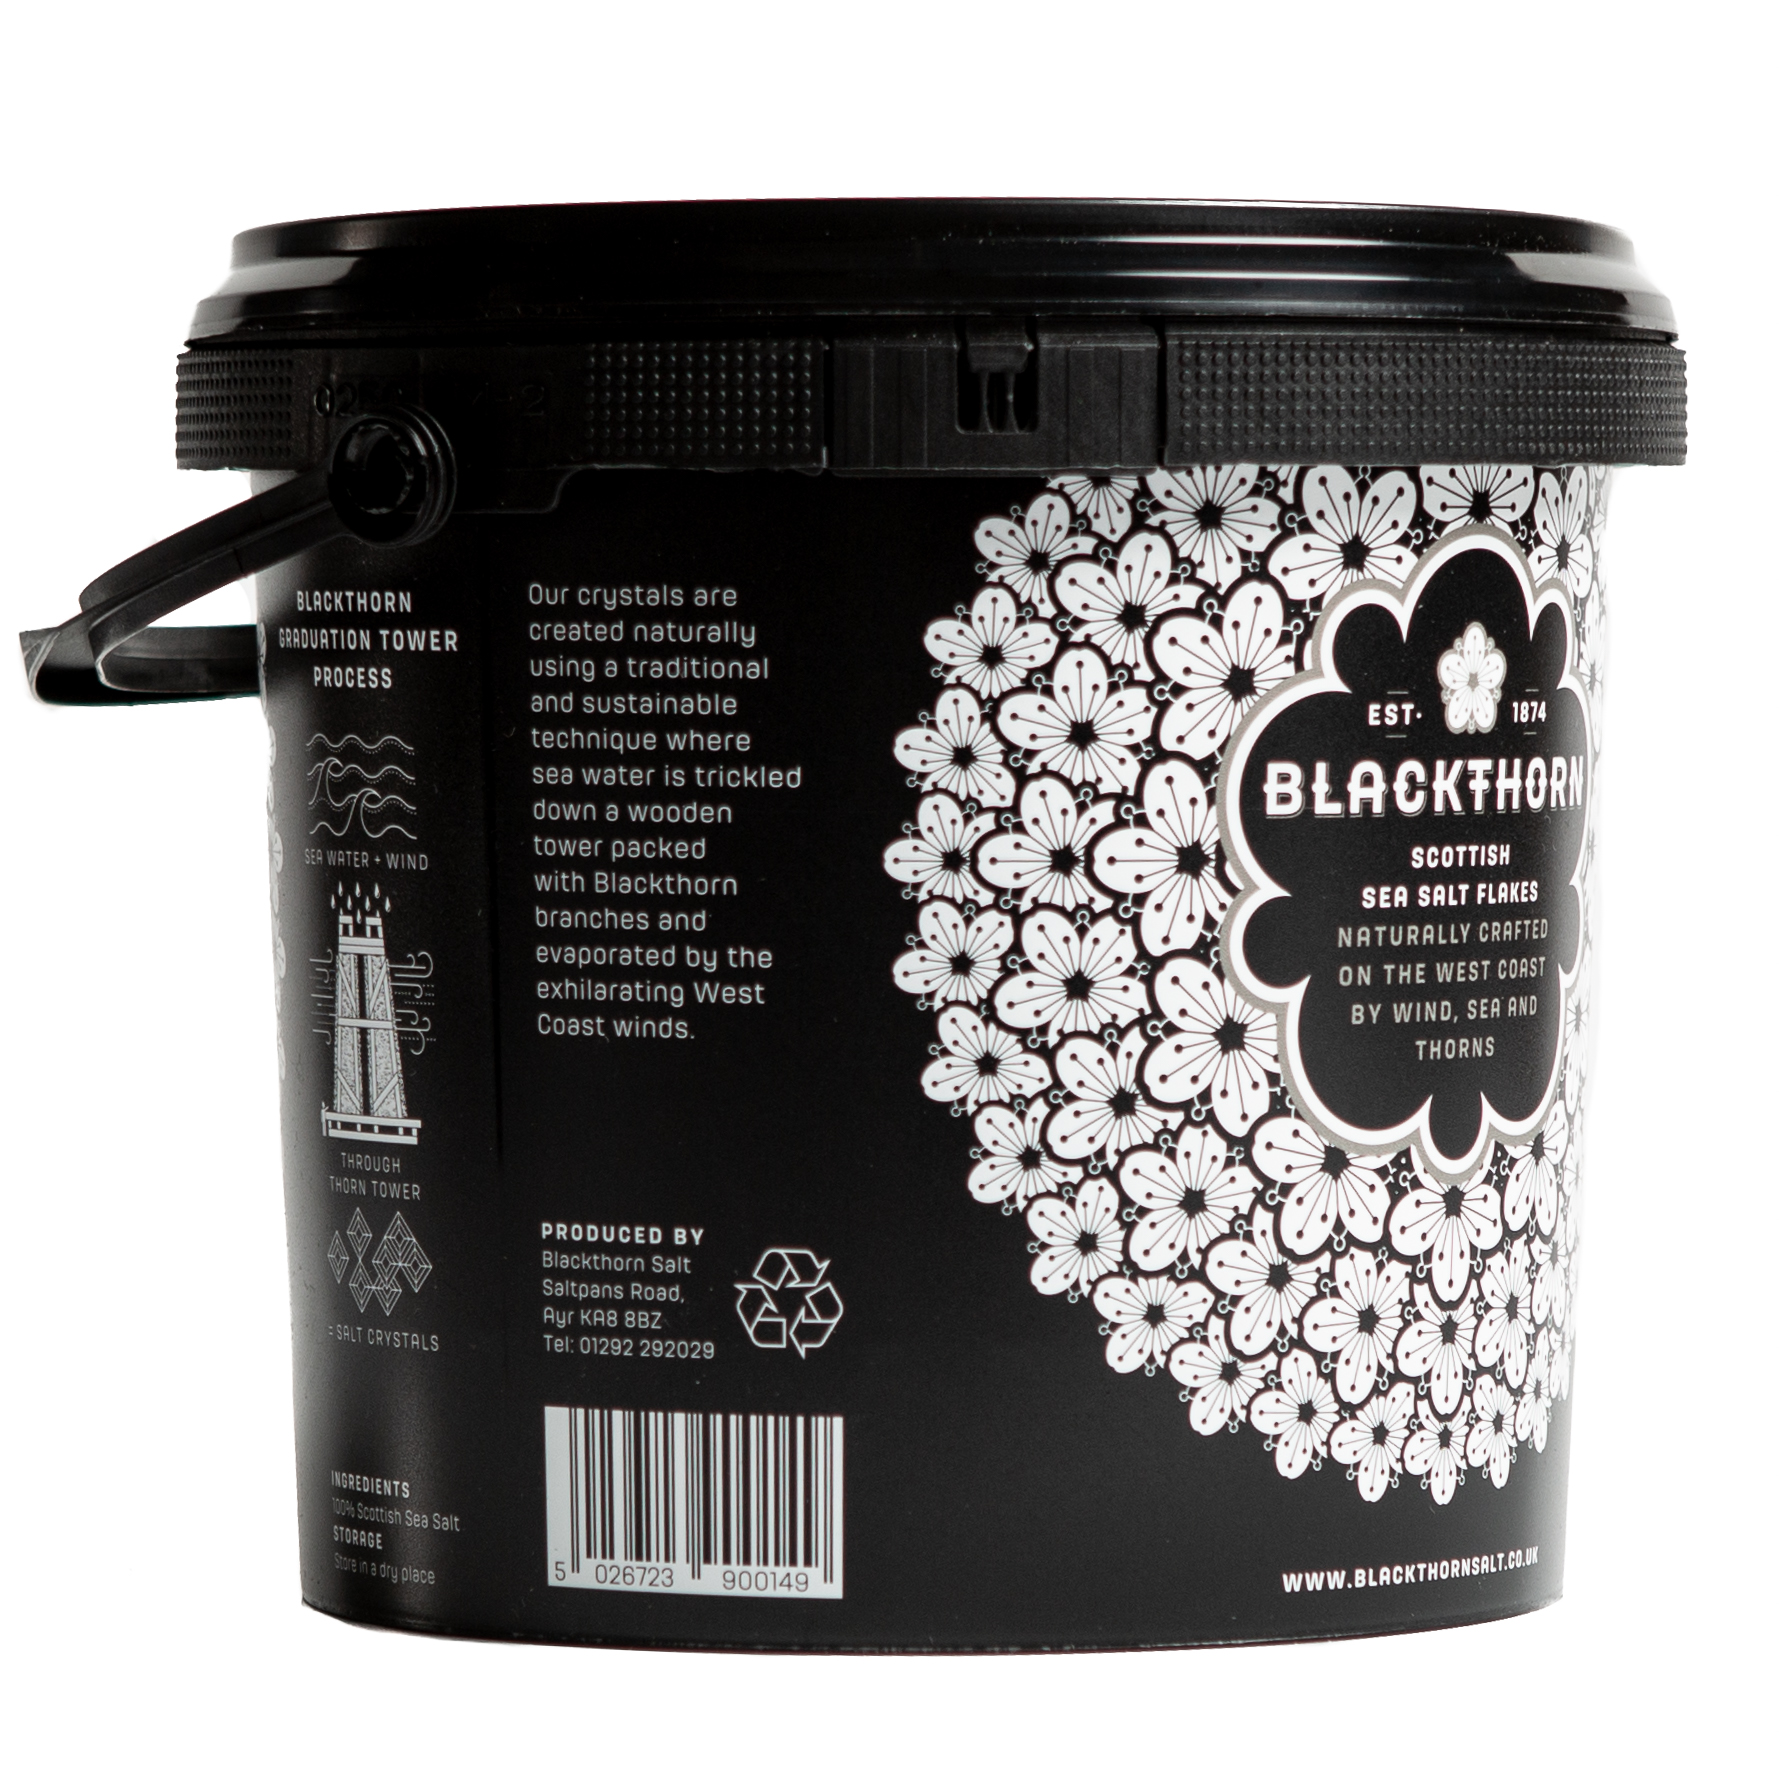 Blackthorn Salt 1.4kg Tub